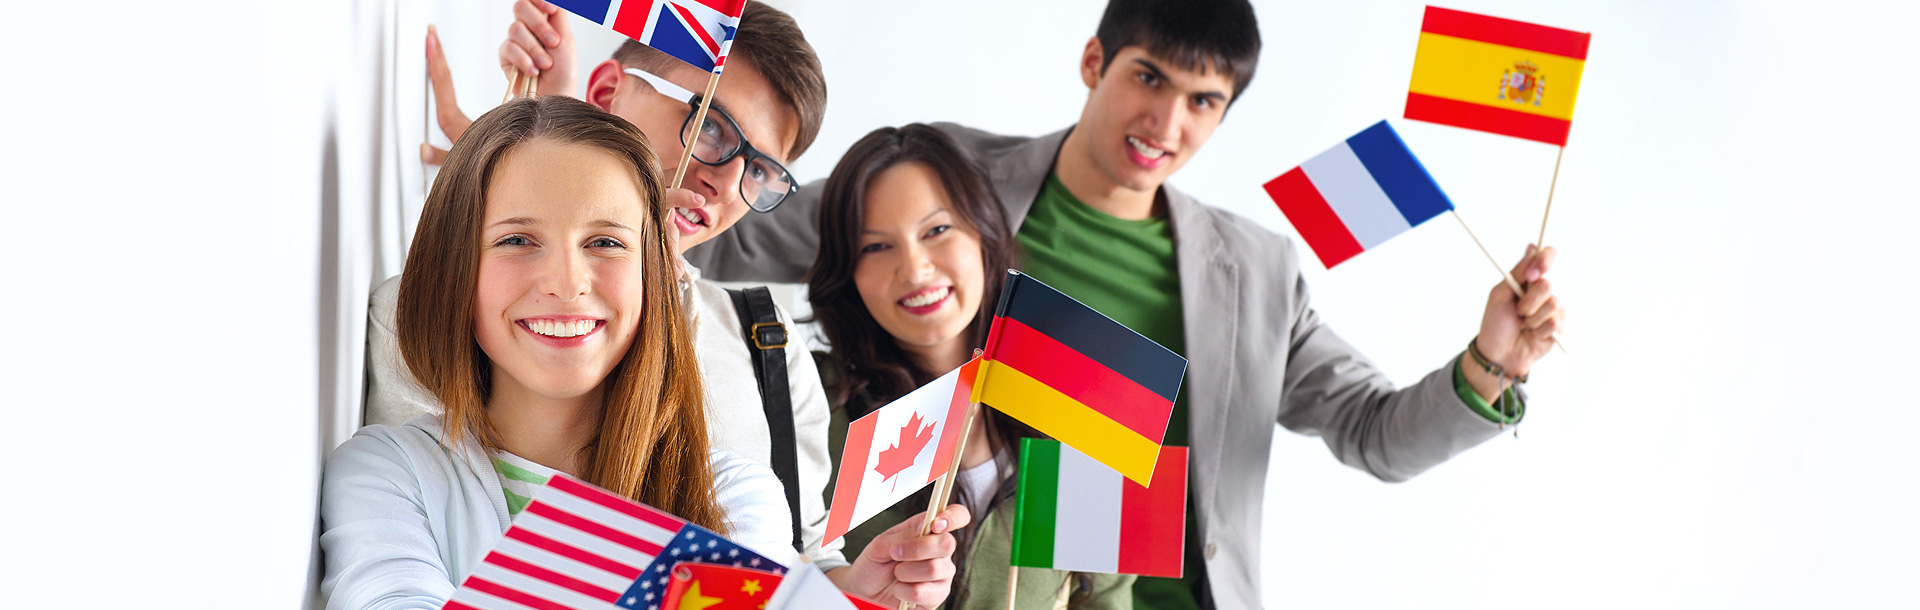 УлГПУ приглашает  на курсы разговорного английского, французского, немецкого, испанского и китайского языков, а также на курсы по подготовке к ЕГЭ по английскому языку